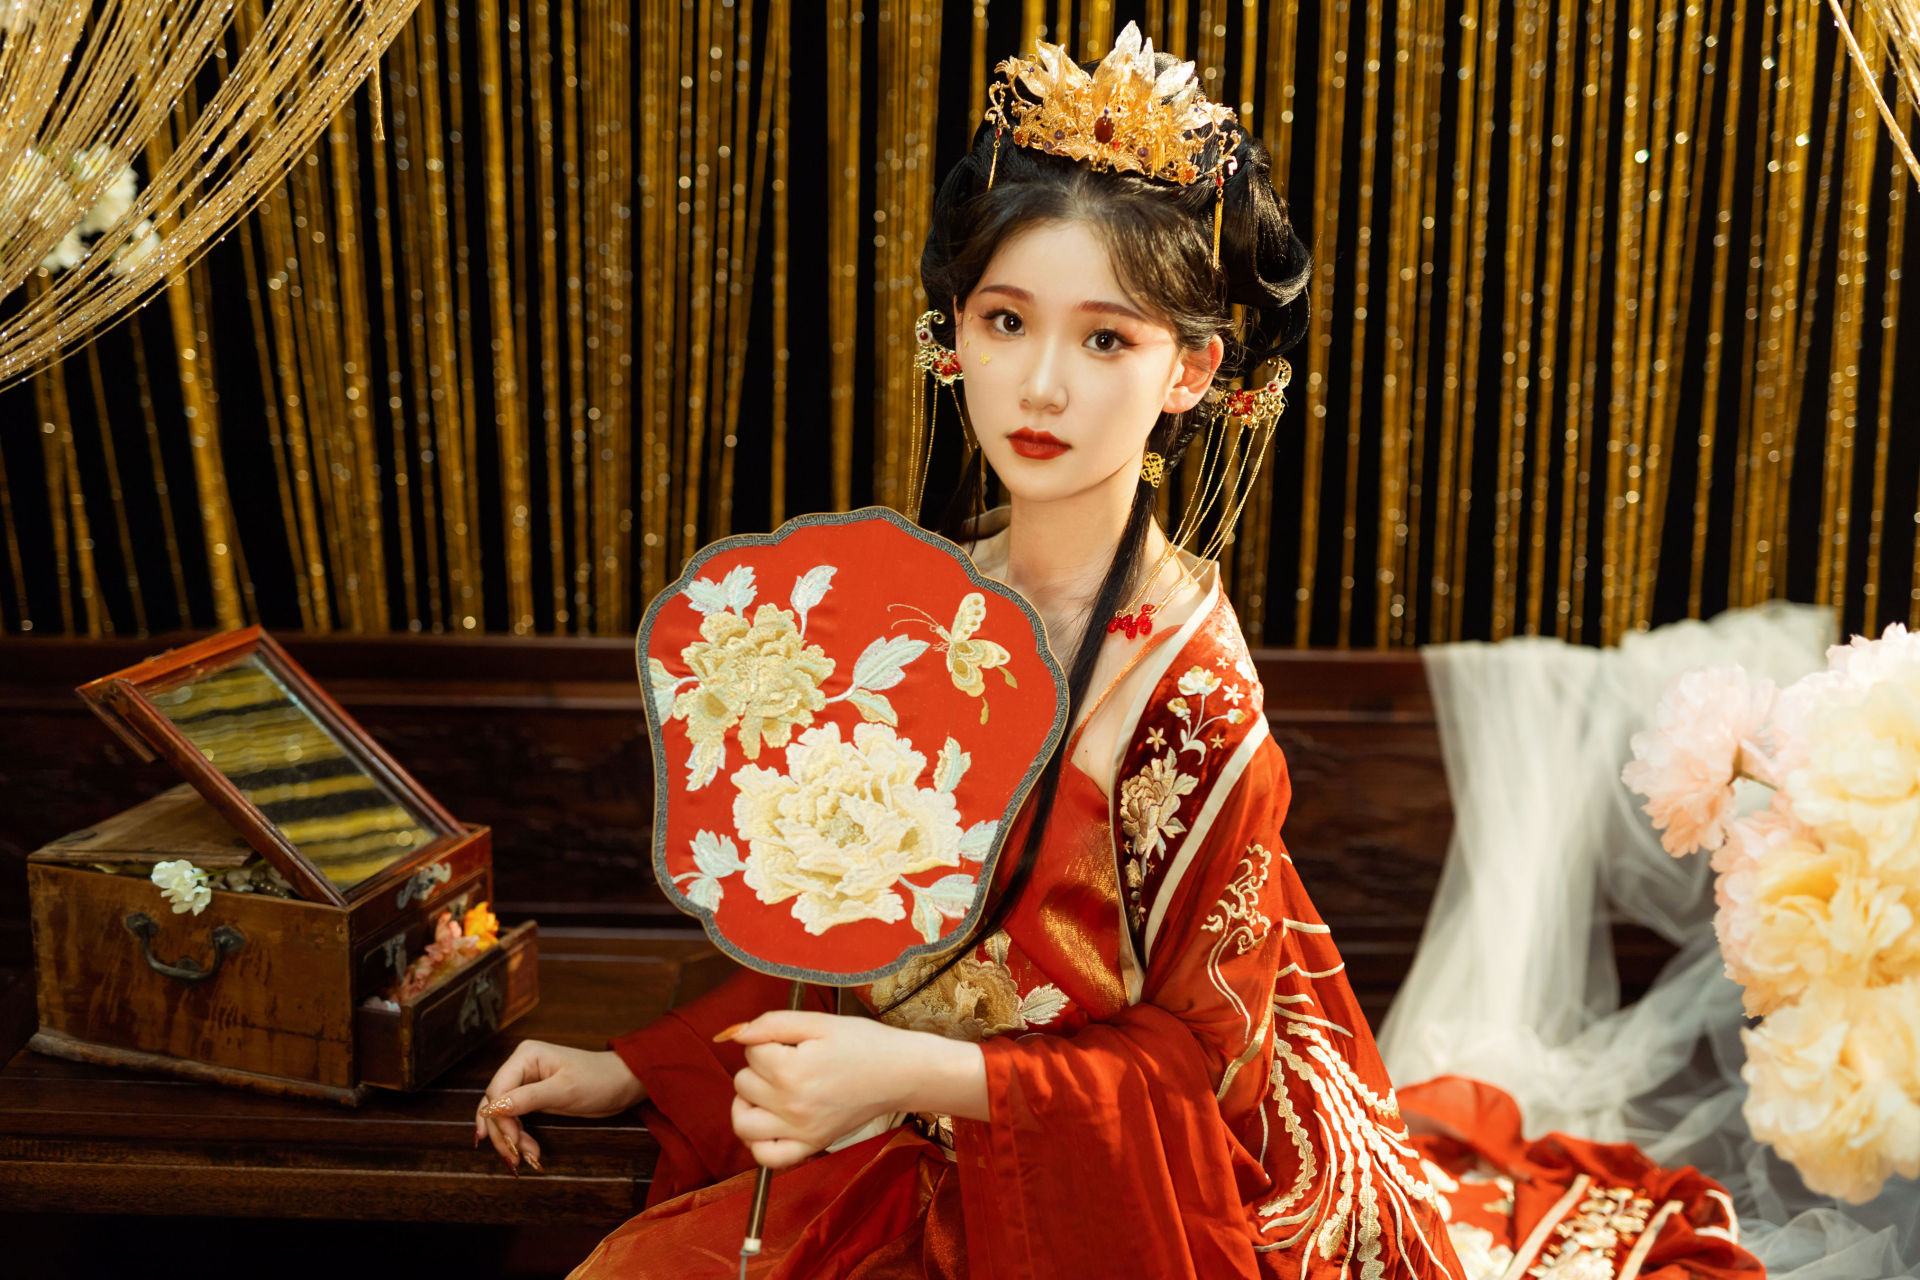 红衣娘子 古风 结婚 新娘 中国风 漂亮